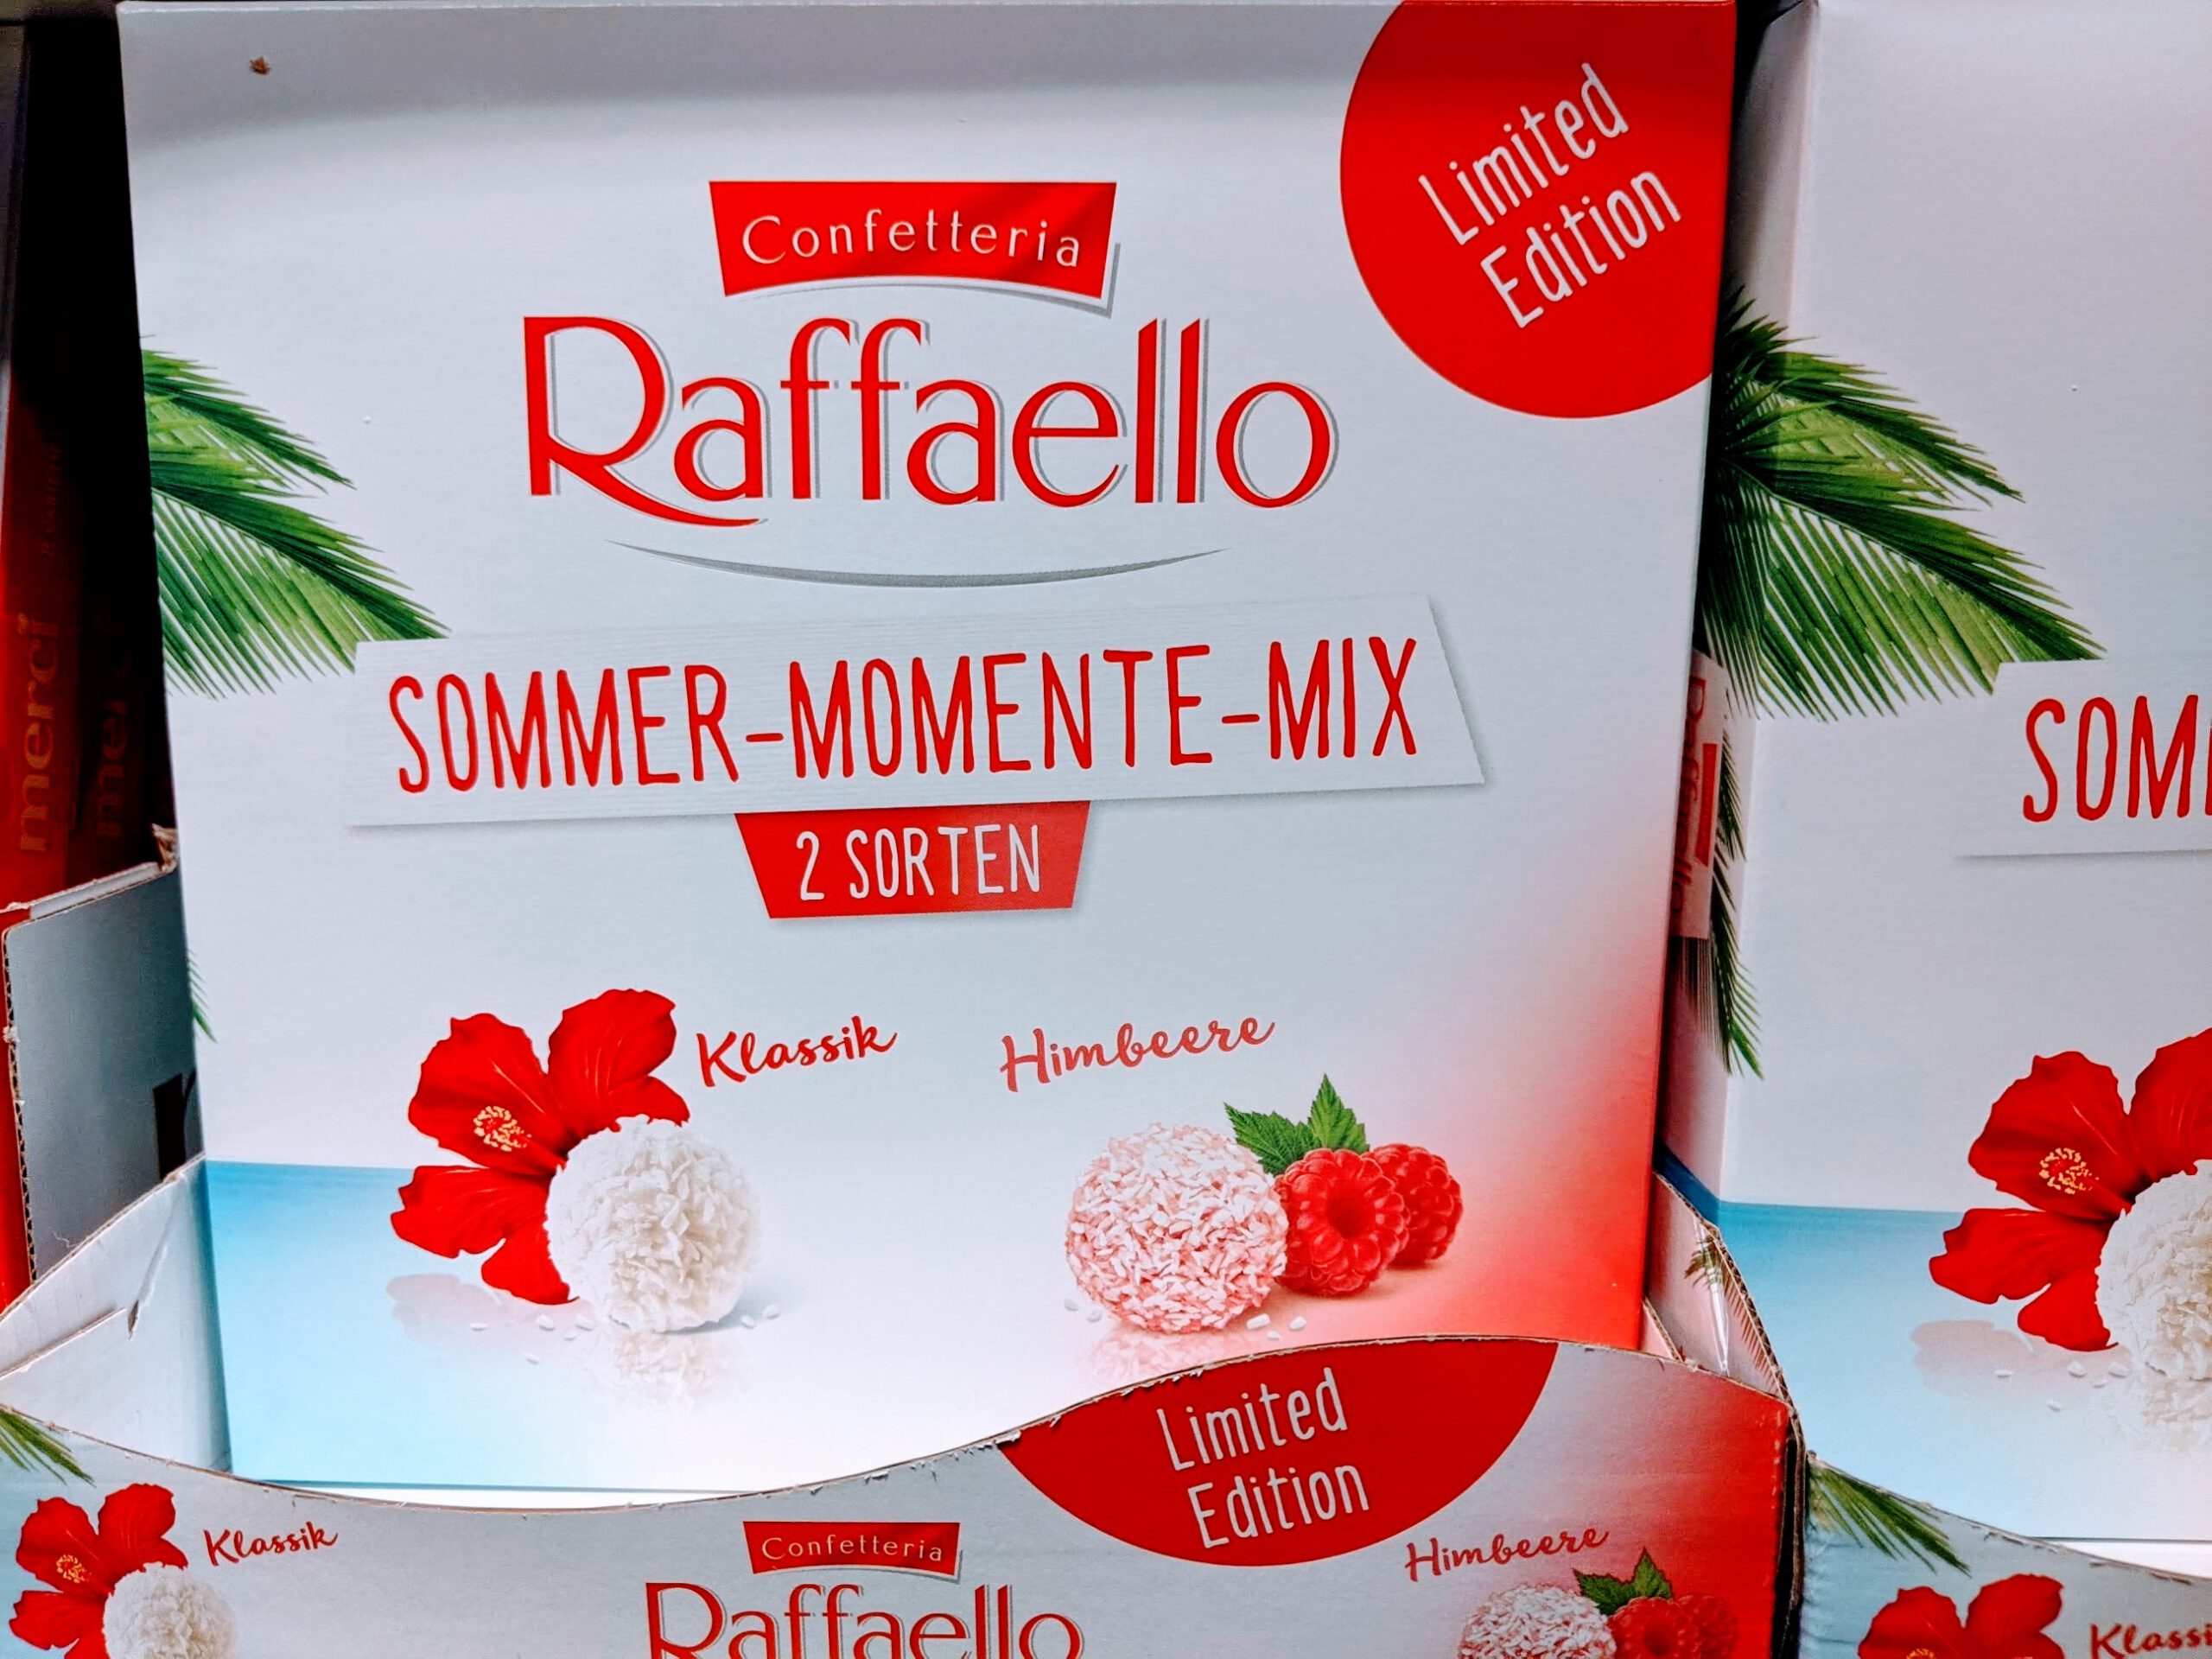 Sommer Ferrero - Raffaello - Produktpakete gewinnen